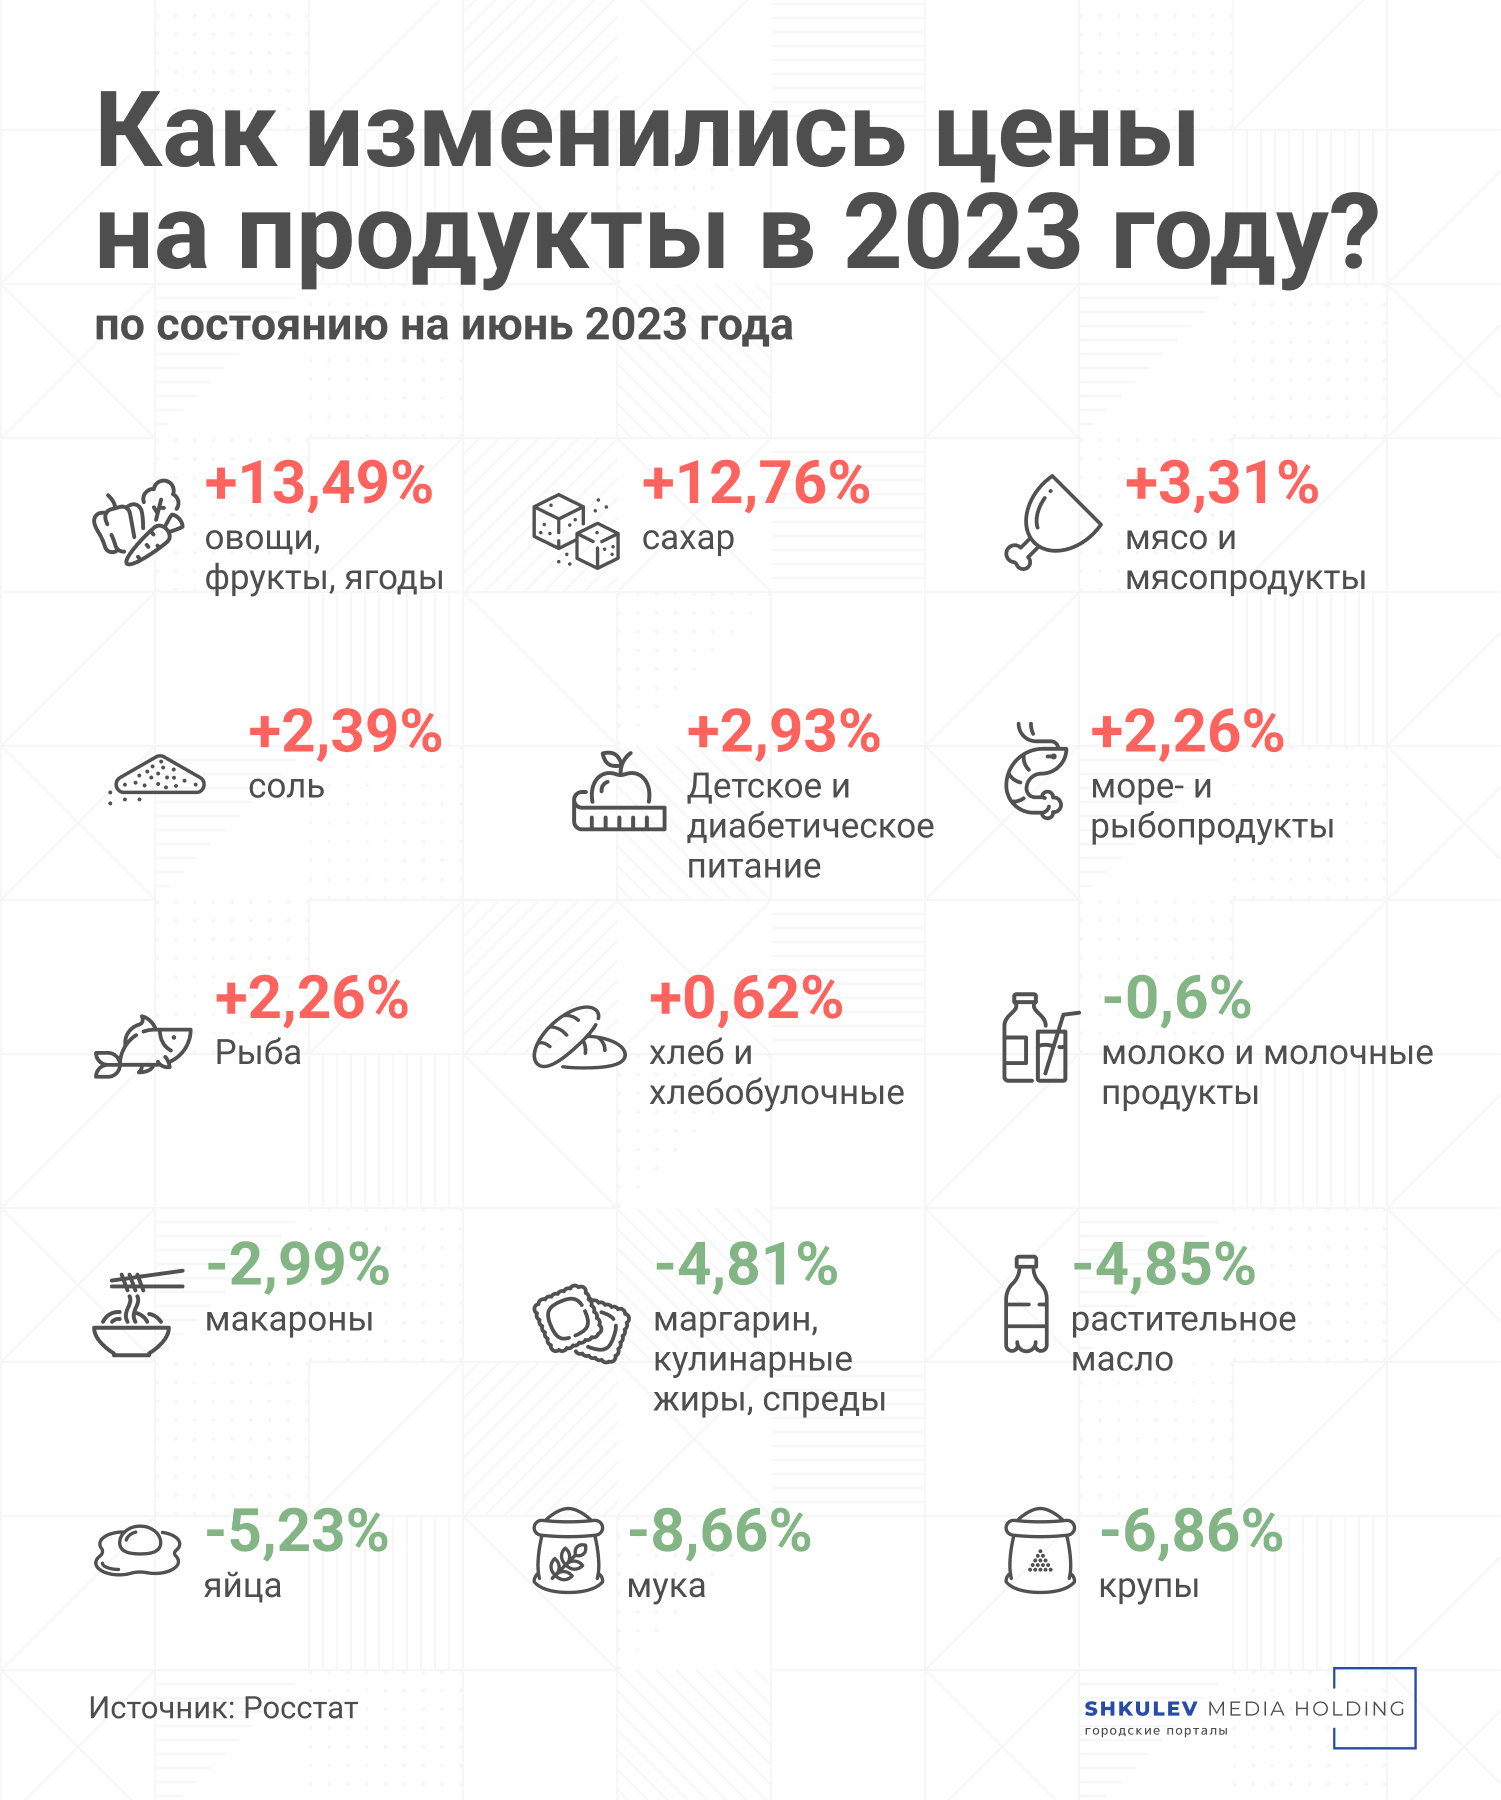 Все изменения цен приведены по отношению к декабрю 2022 года